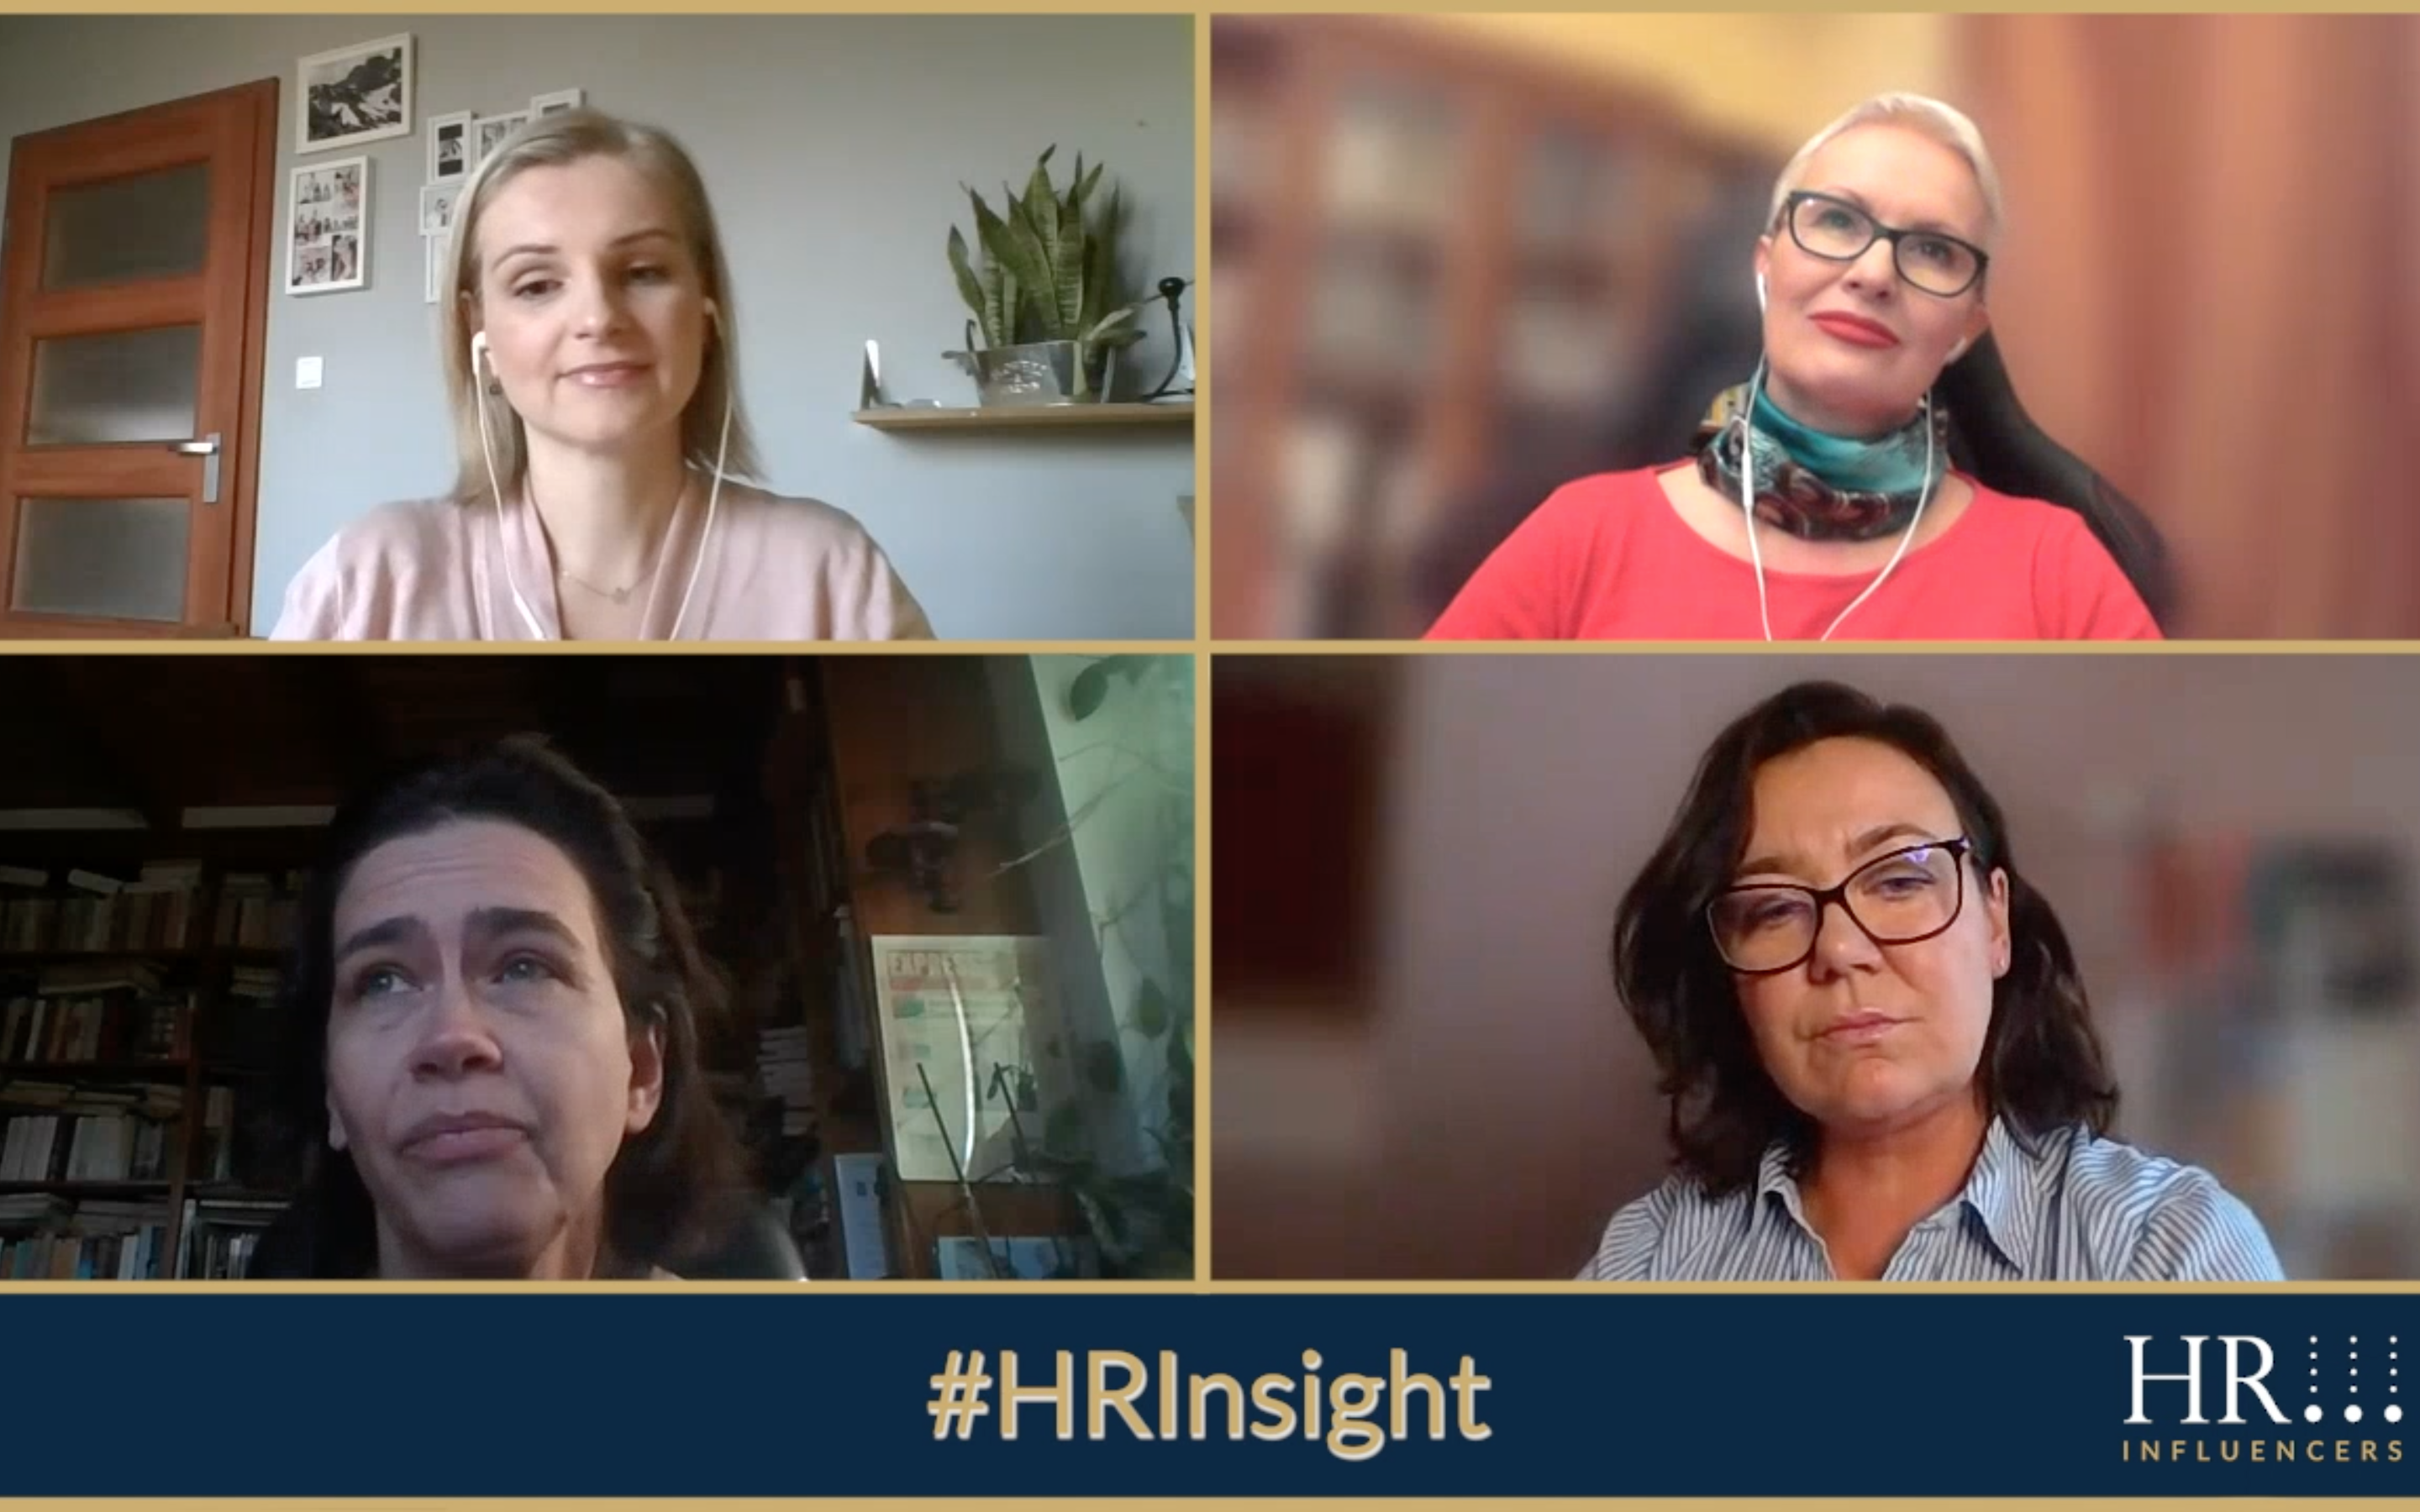 HRInsight odc. 1 (wideo): Weryfikacja „NieDaSię” liderów i pracowników